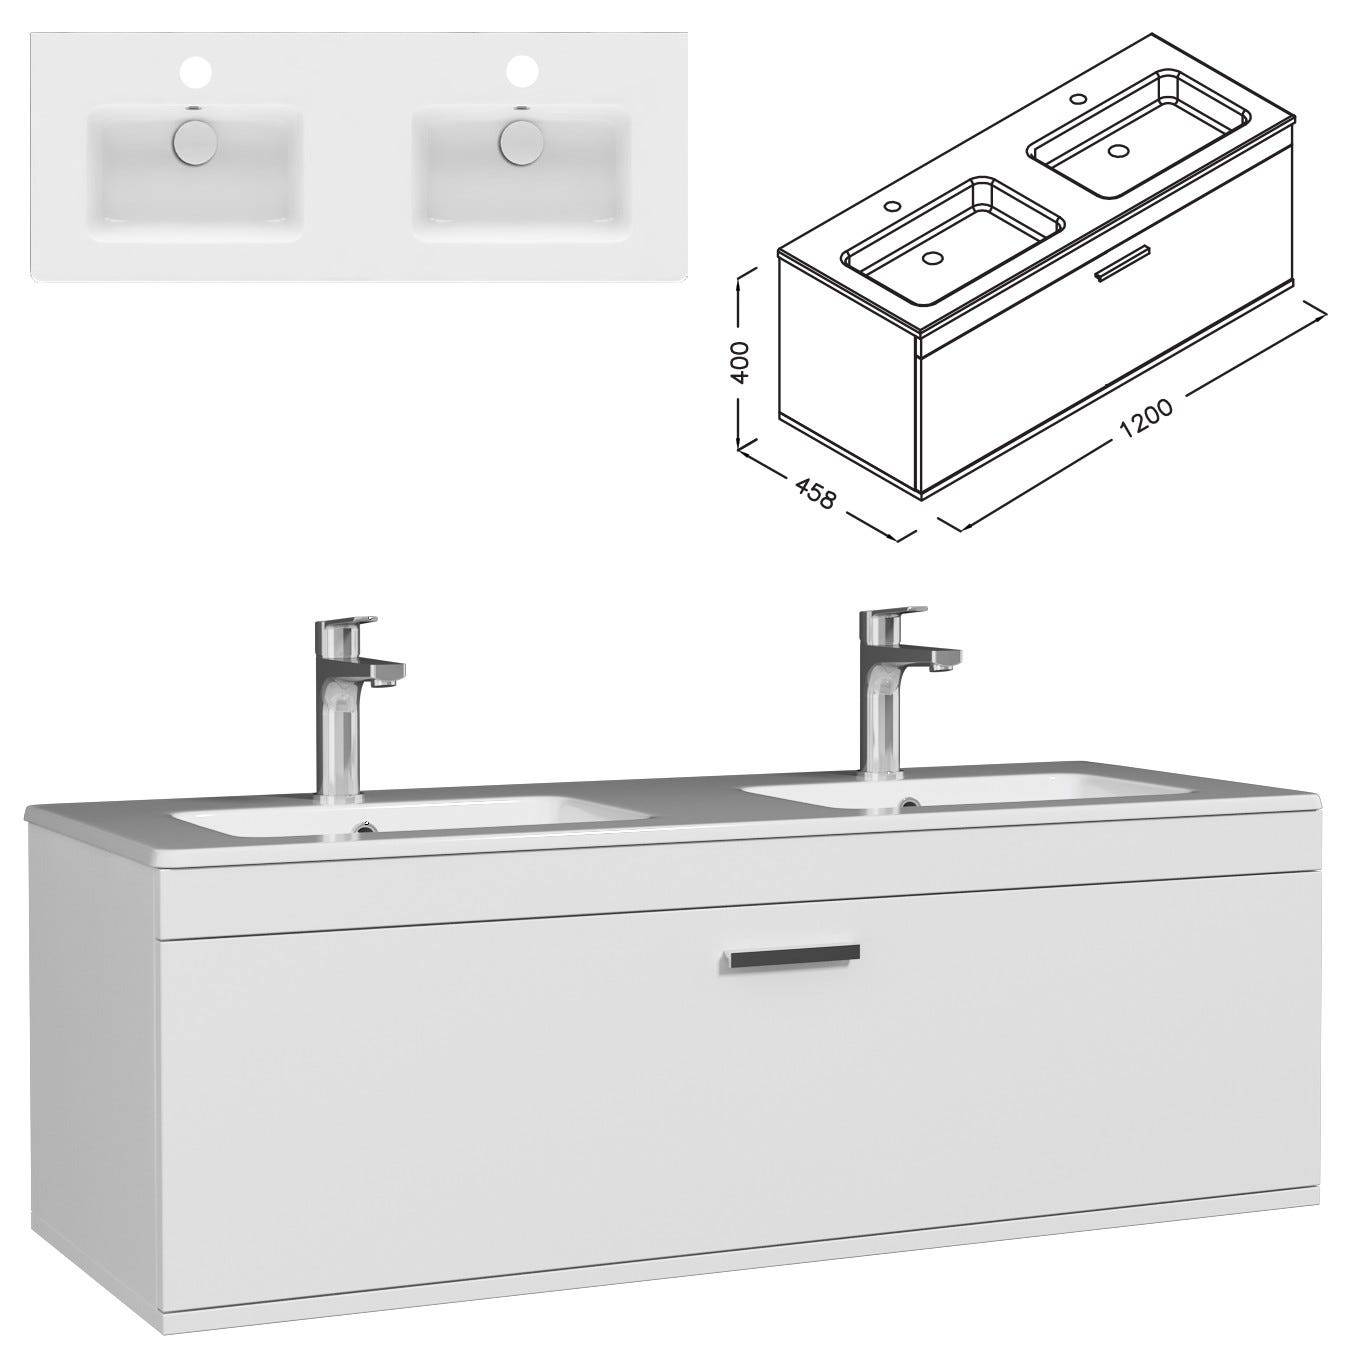 RUBITE Meuble salle de bain double vasque 1 tiroir blanc largeur 120 cm 2